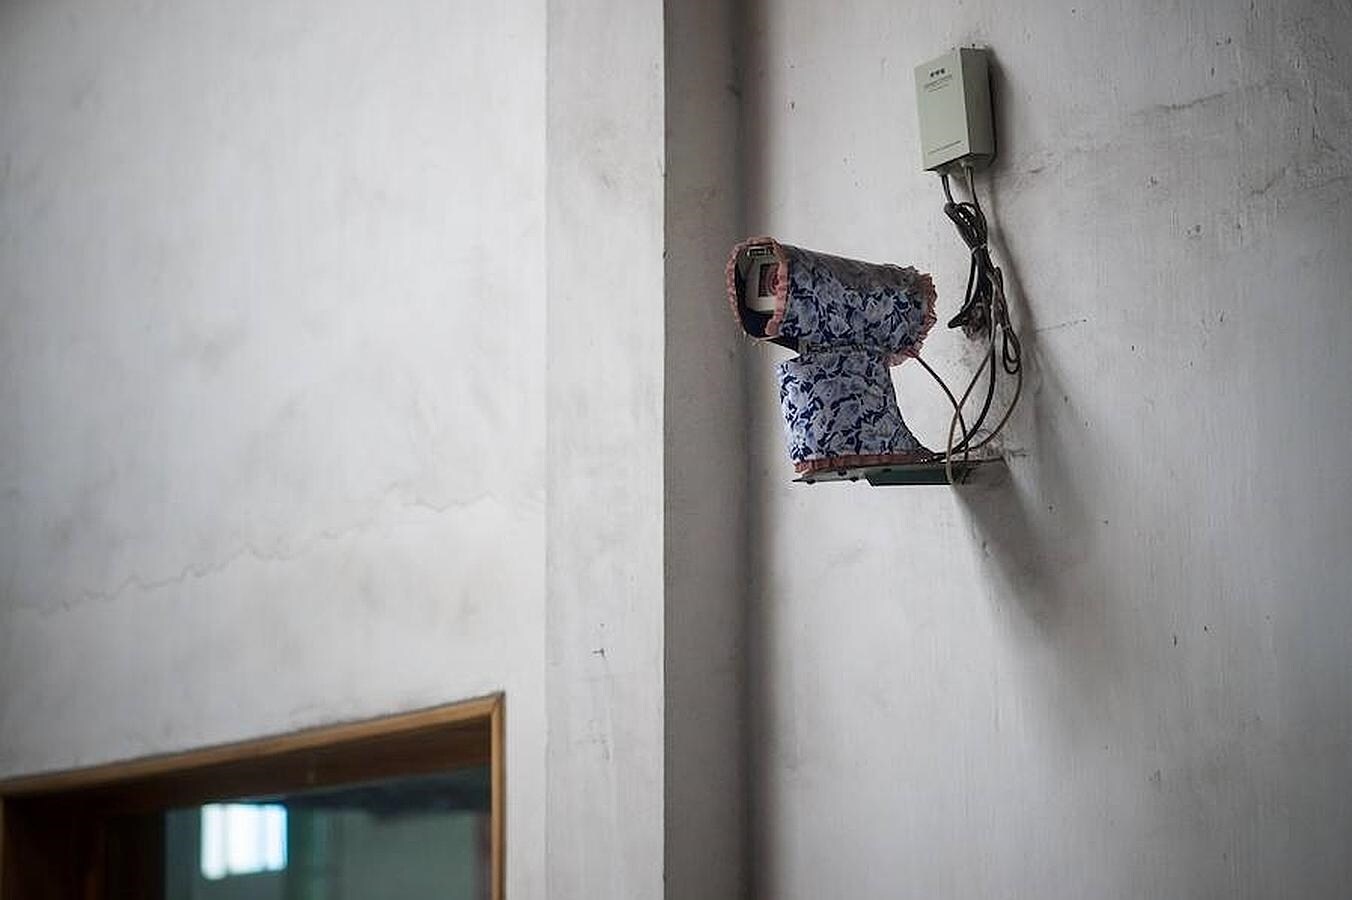 Una cámara de seguridad aparece tapada con un trapo, durante la visita organizada para los medios de comunicación foráneos a una fábrica de cable eléctrico de Pyongyang